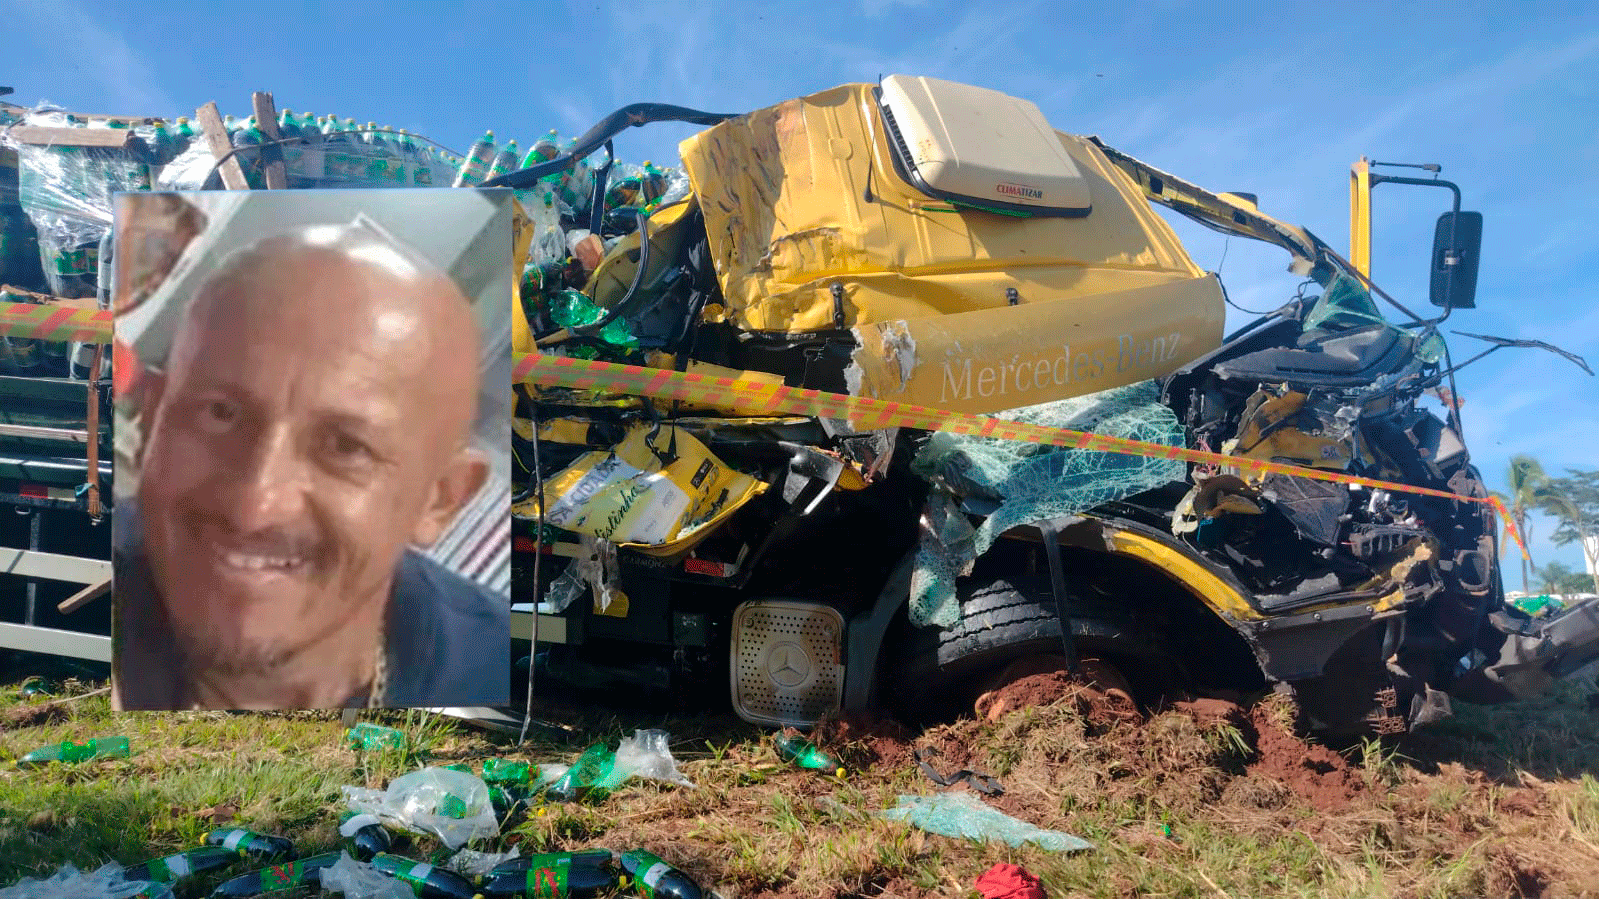 Morre vítima de grave acidente na Rodovia Euclides da Cunha, em Santa Fé do Sul